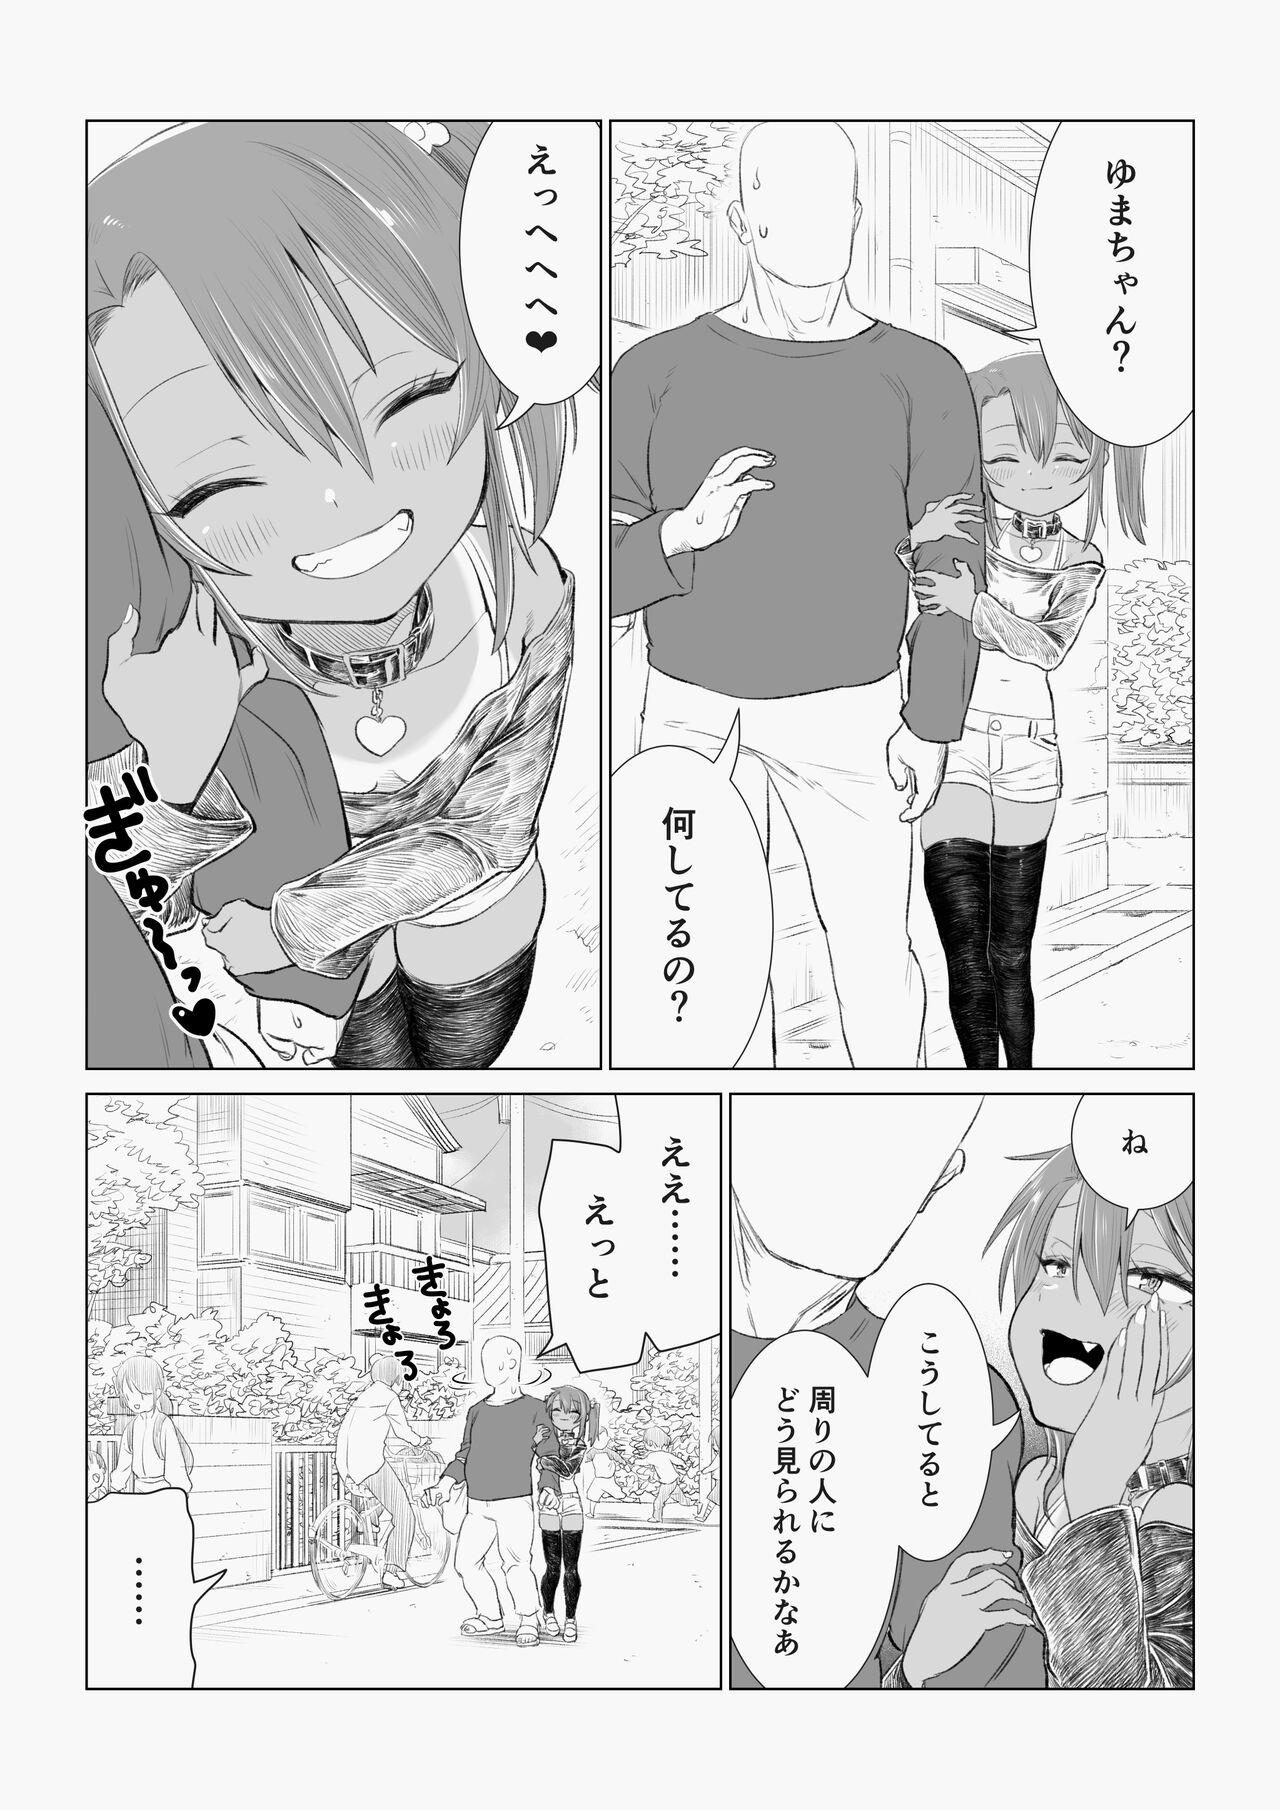 Yuma-chan's Web manga 21